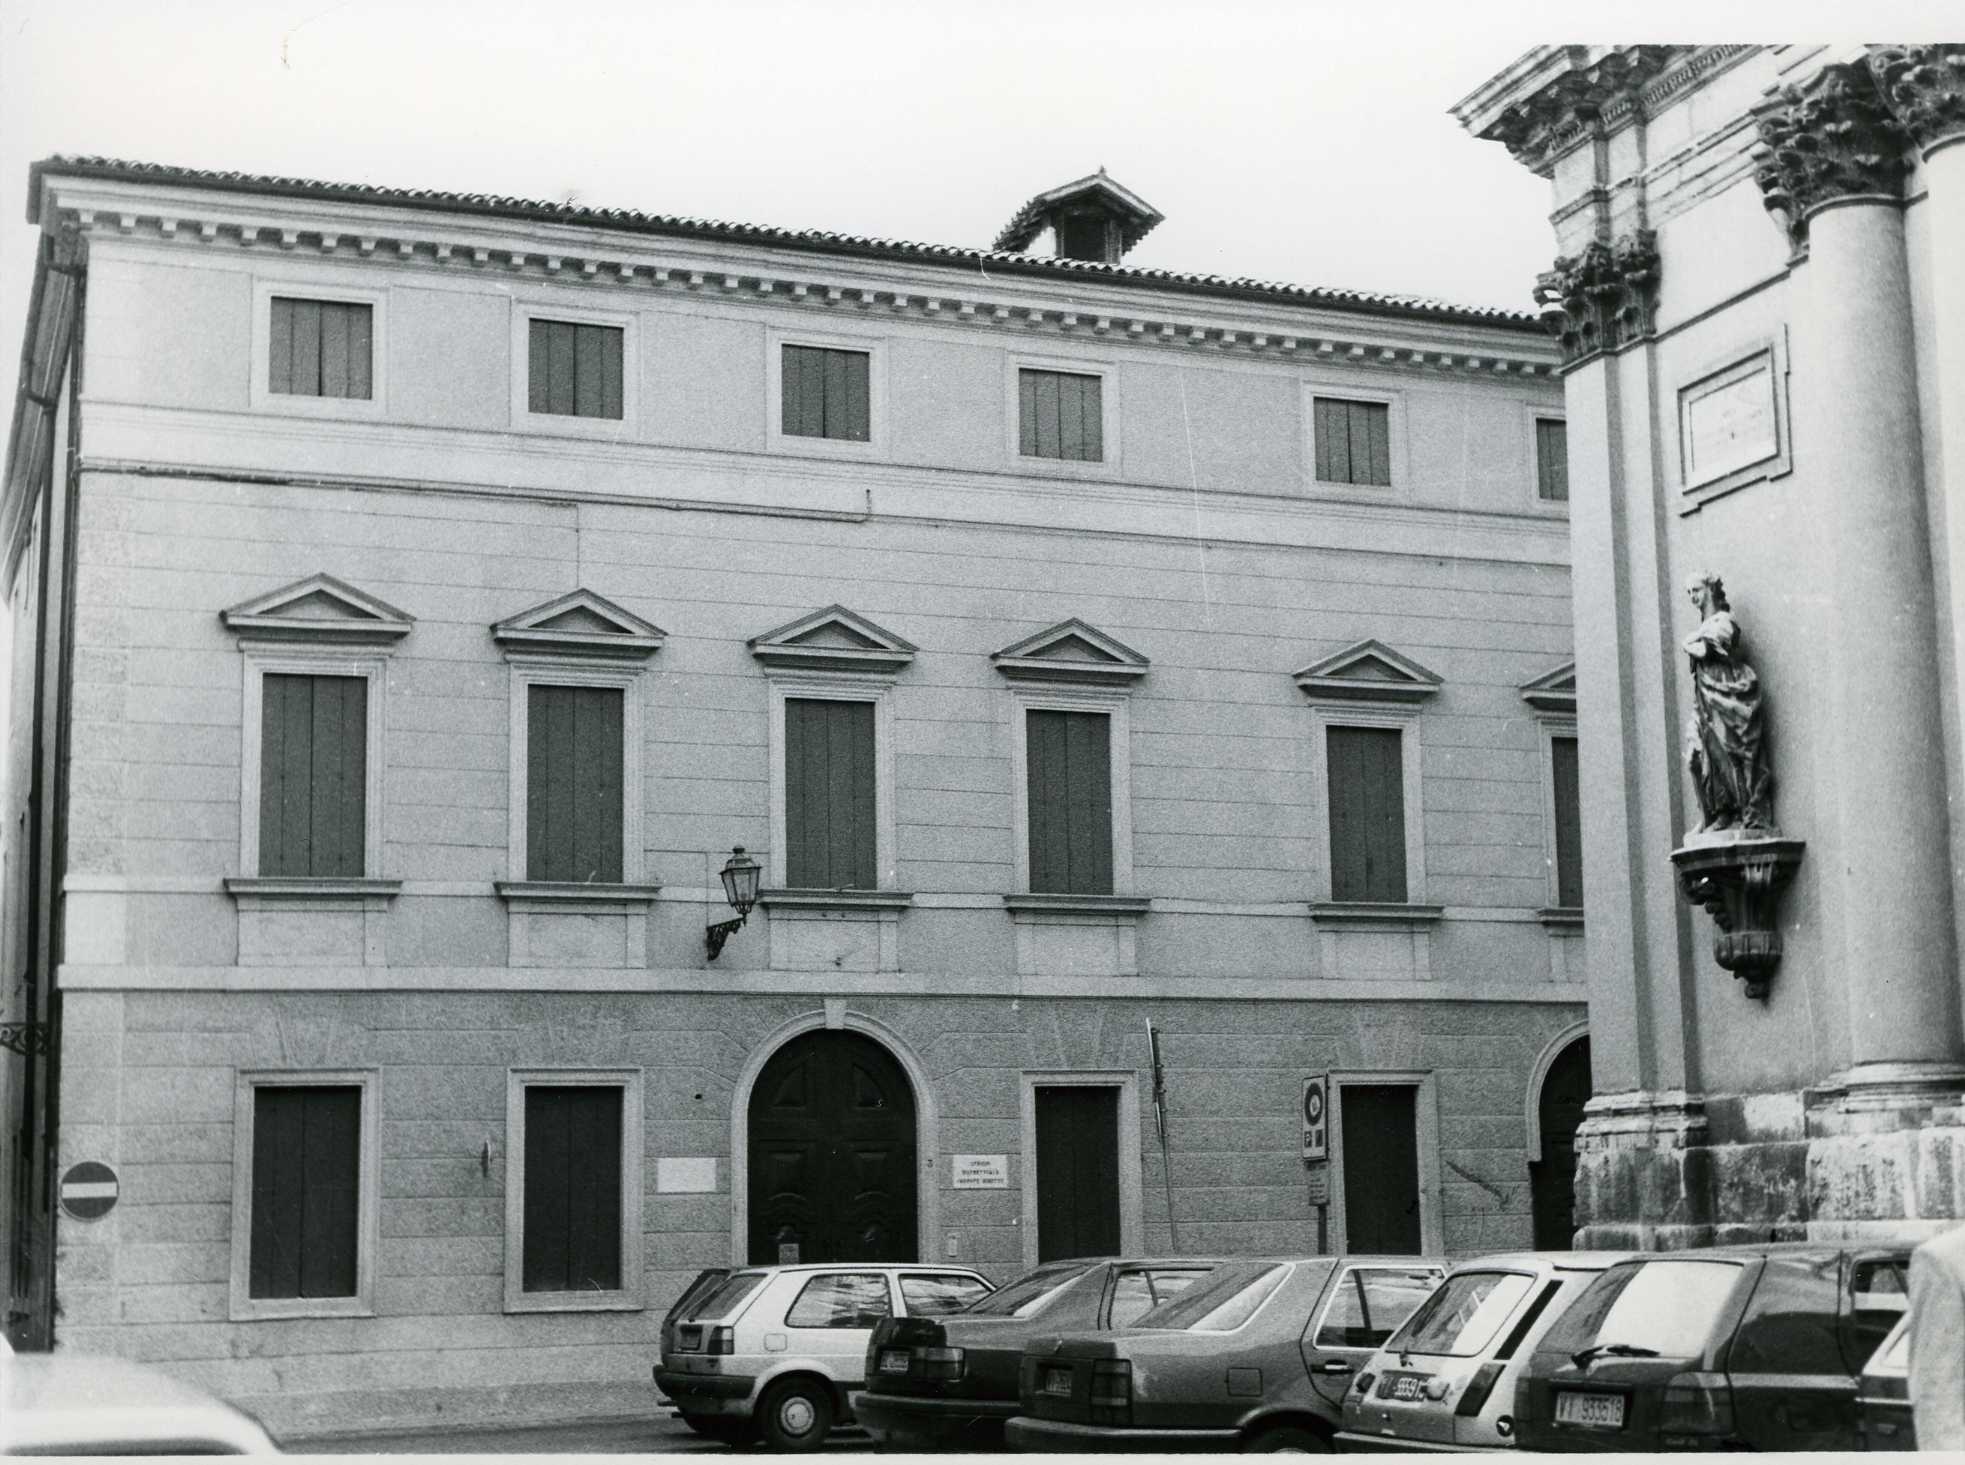 Palazzo Capra (palazzo, nobiliare) - Vicenza (VI)  (XVIII, seconda metà)